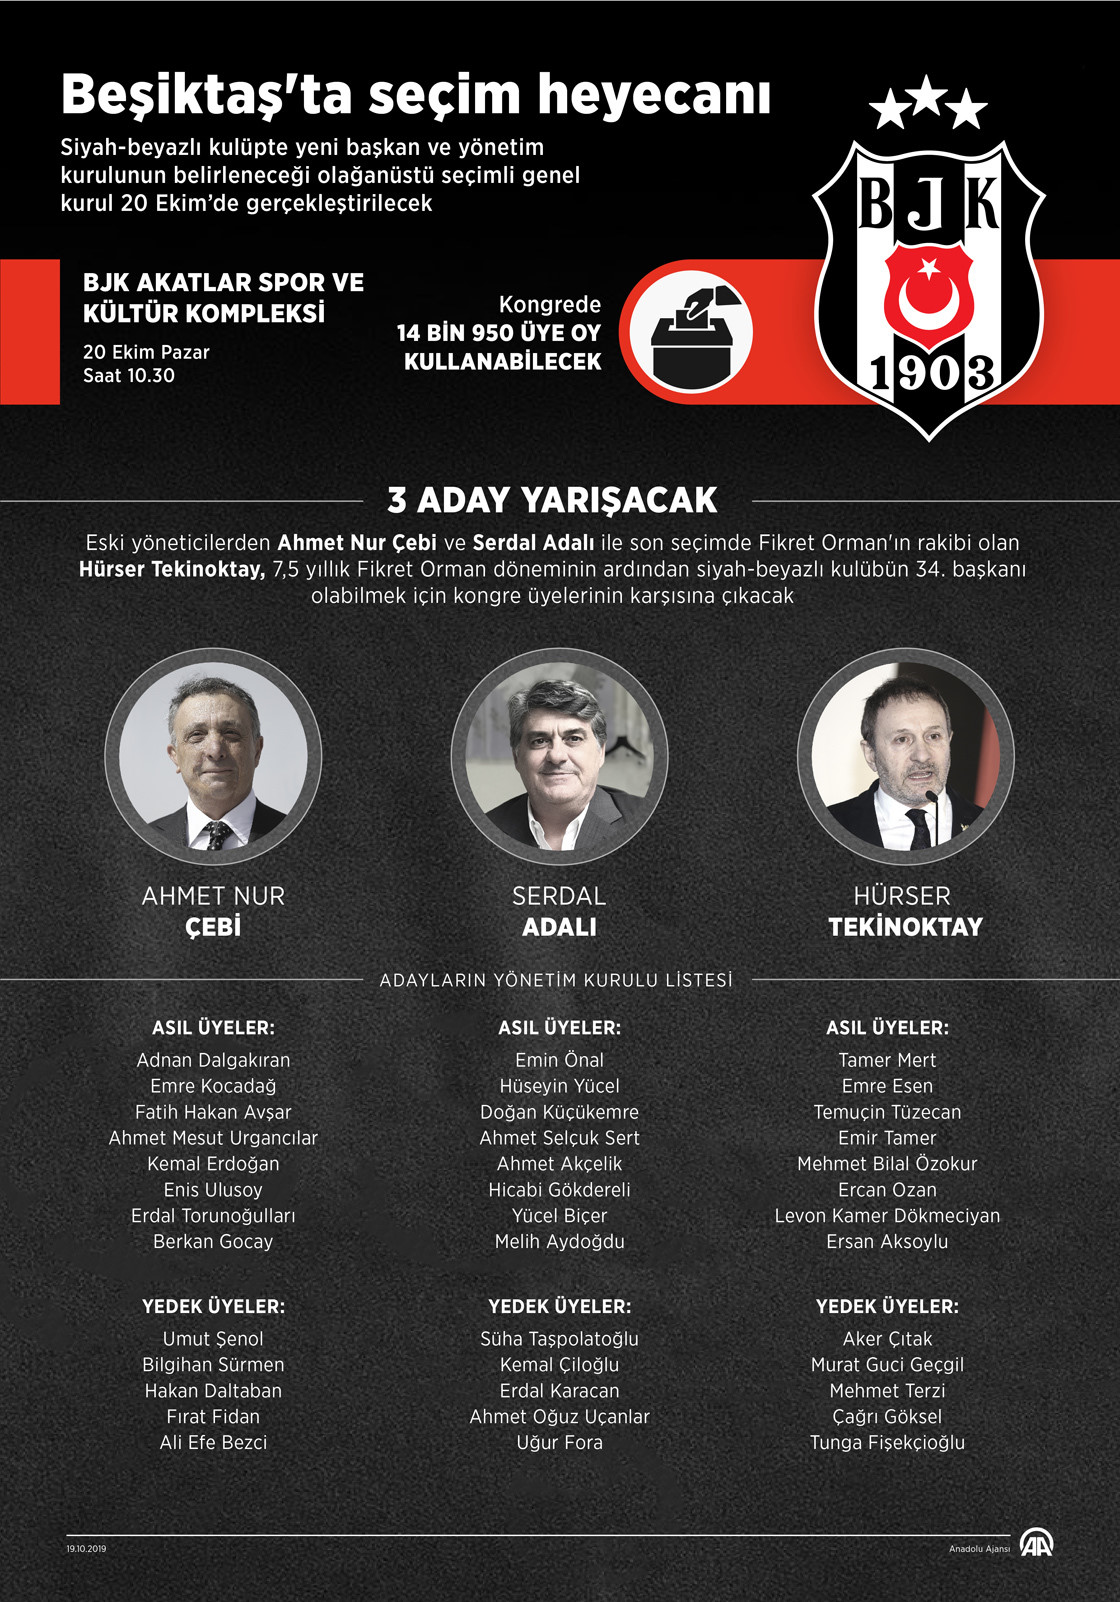 Beşiktaş'ta başkan adayları son kez konuştu ve oy verme işlemi başladı